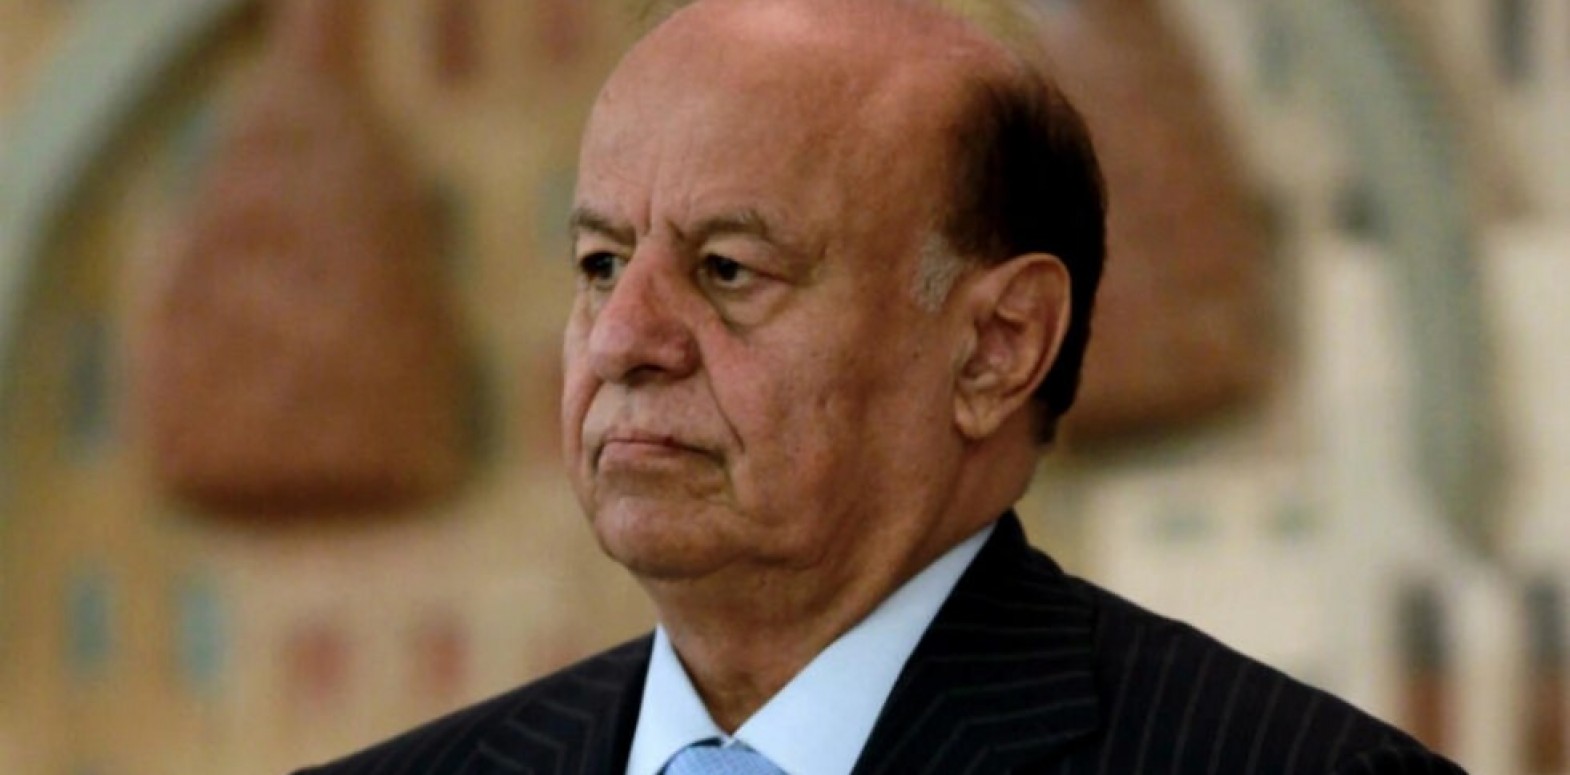 ماحقيقة الادعاءات المتداولة حول وفاة الرئيس اليمني السابق عبدربه منصور هادي حديثاً؟